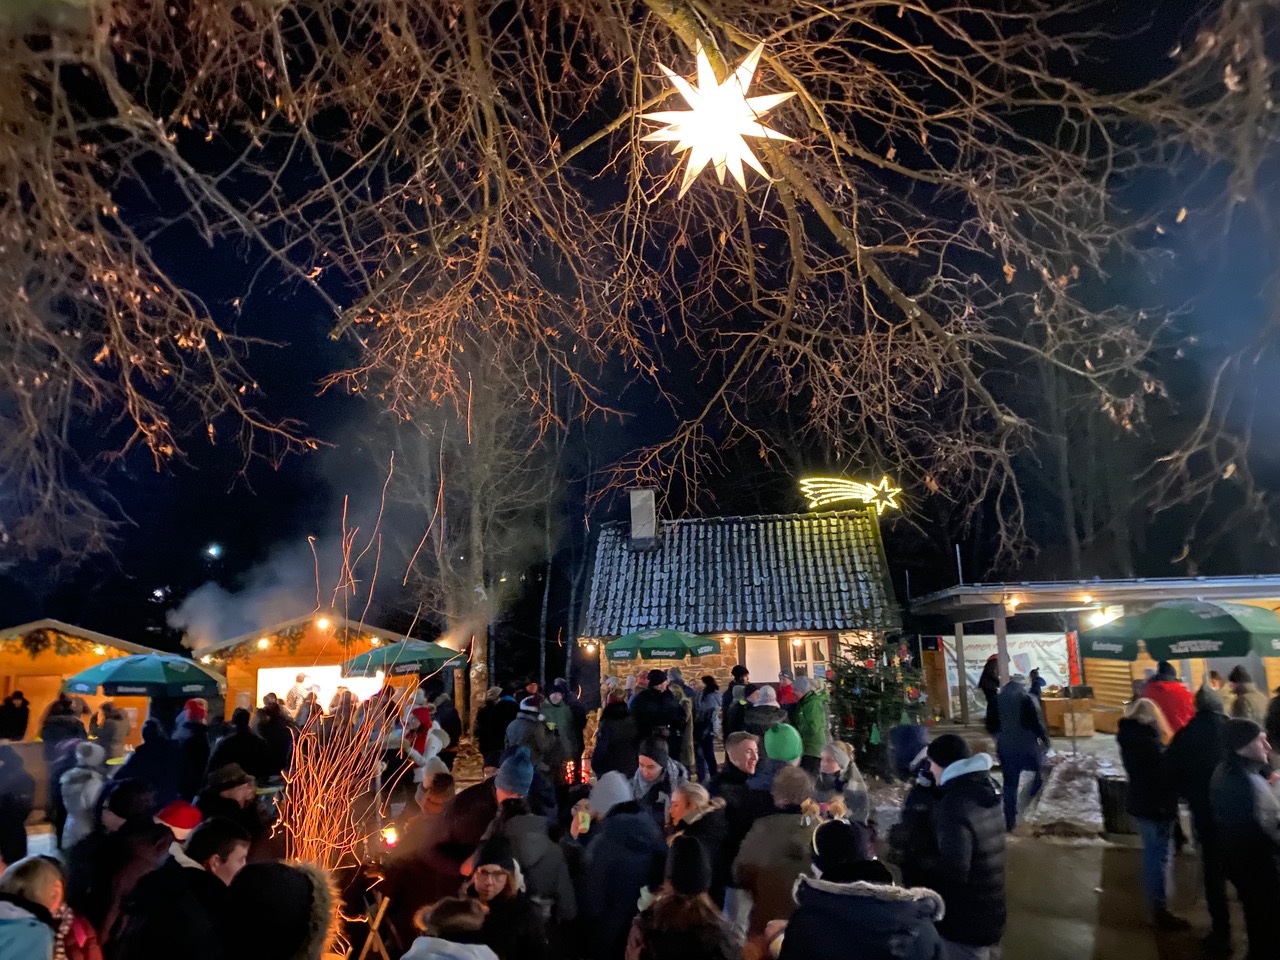 20 Jahre Weihnachtsmarkt am Backes in Elkhausen